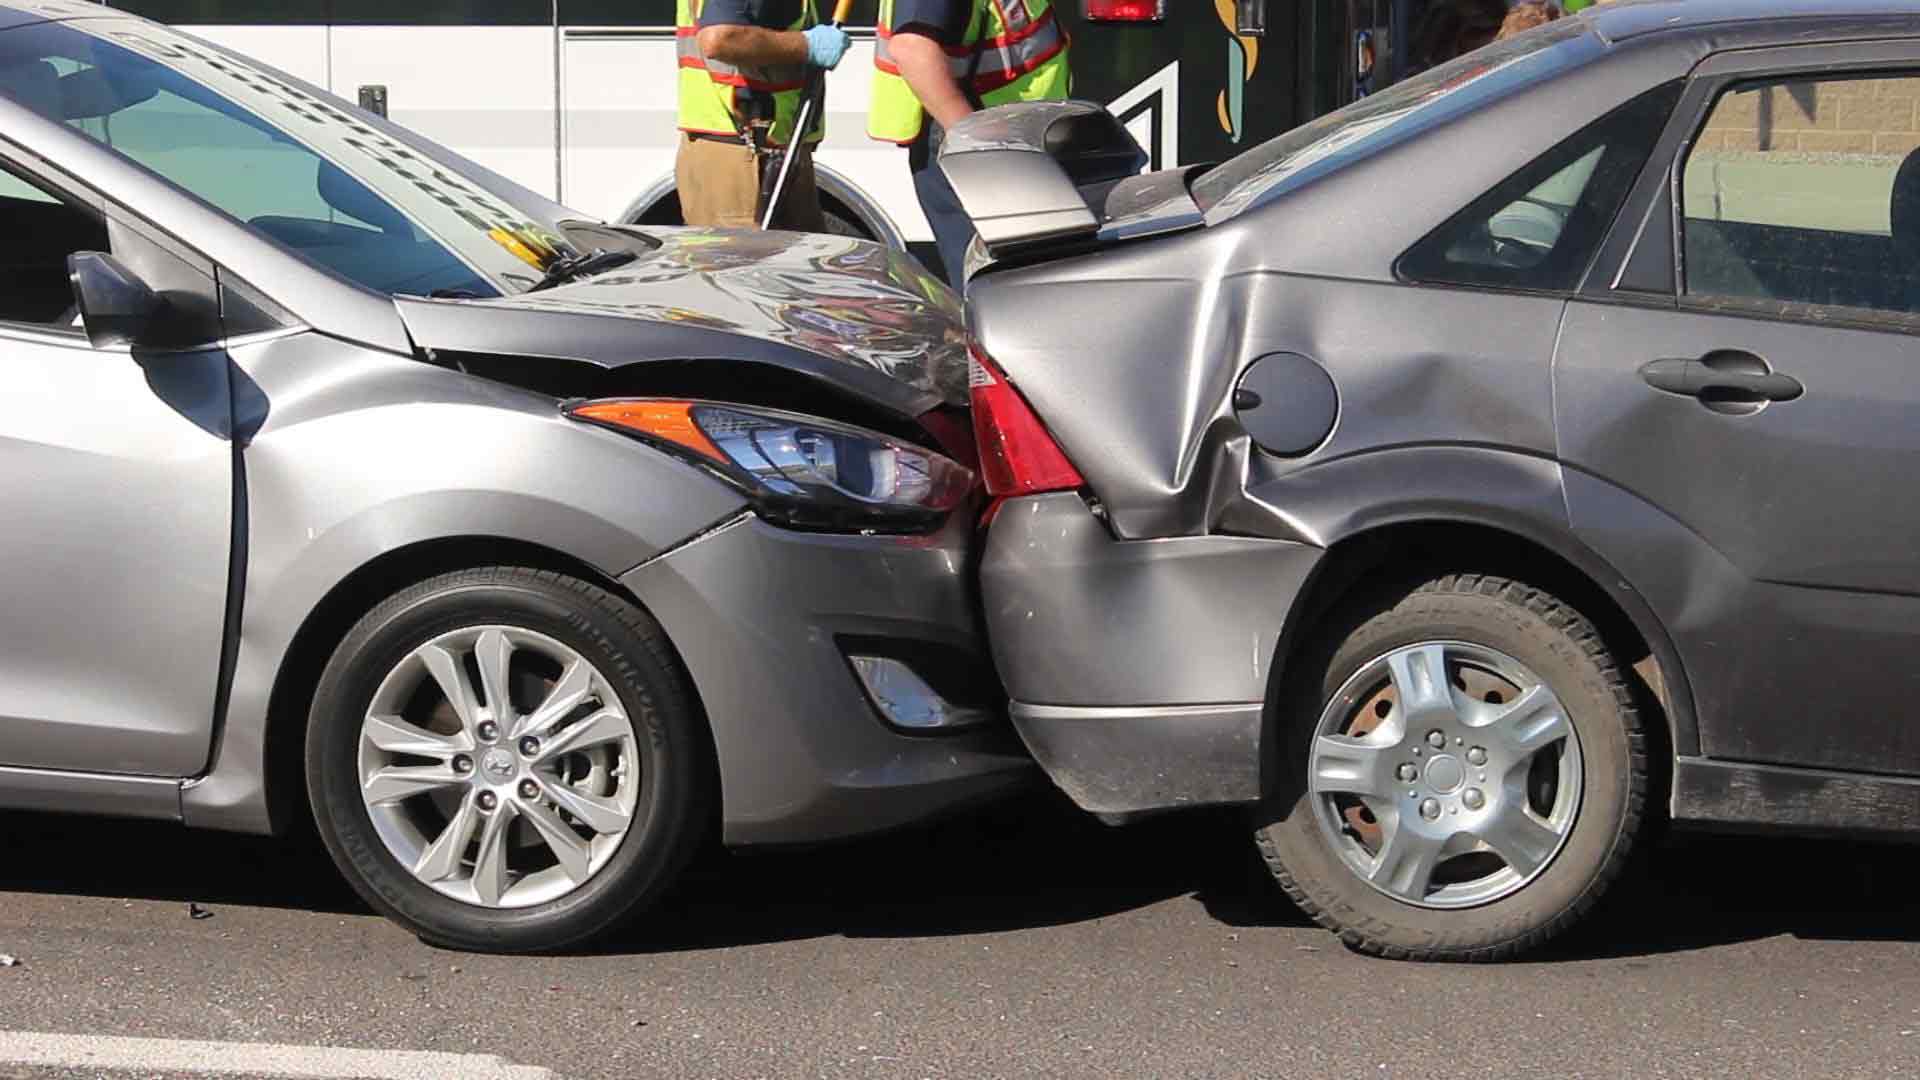 تاثیر سیستم ترمز خودکار در تصادفات